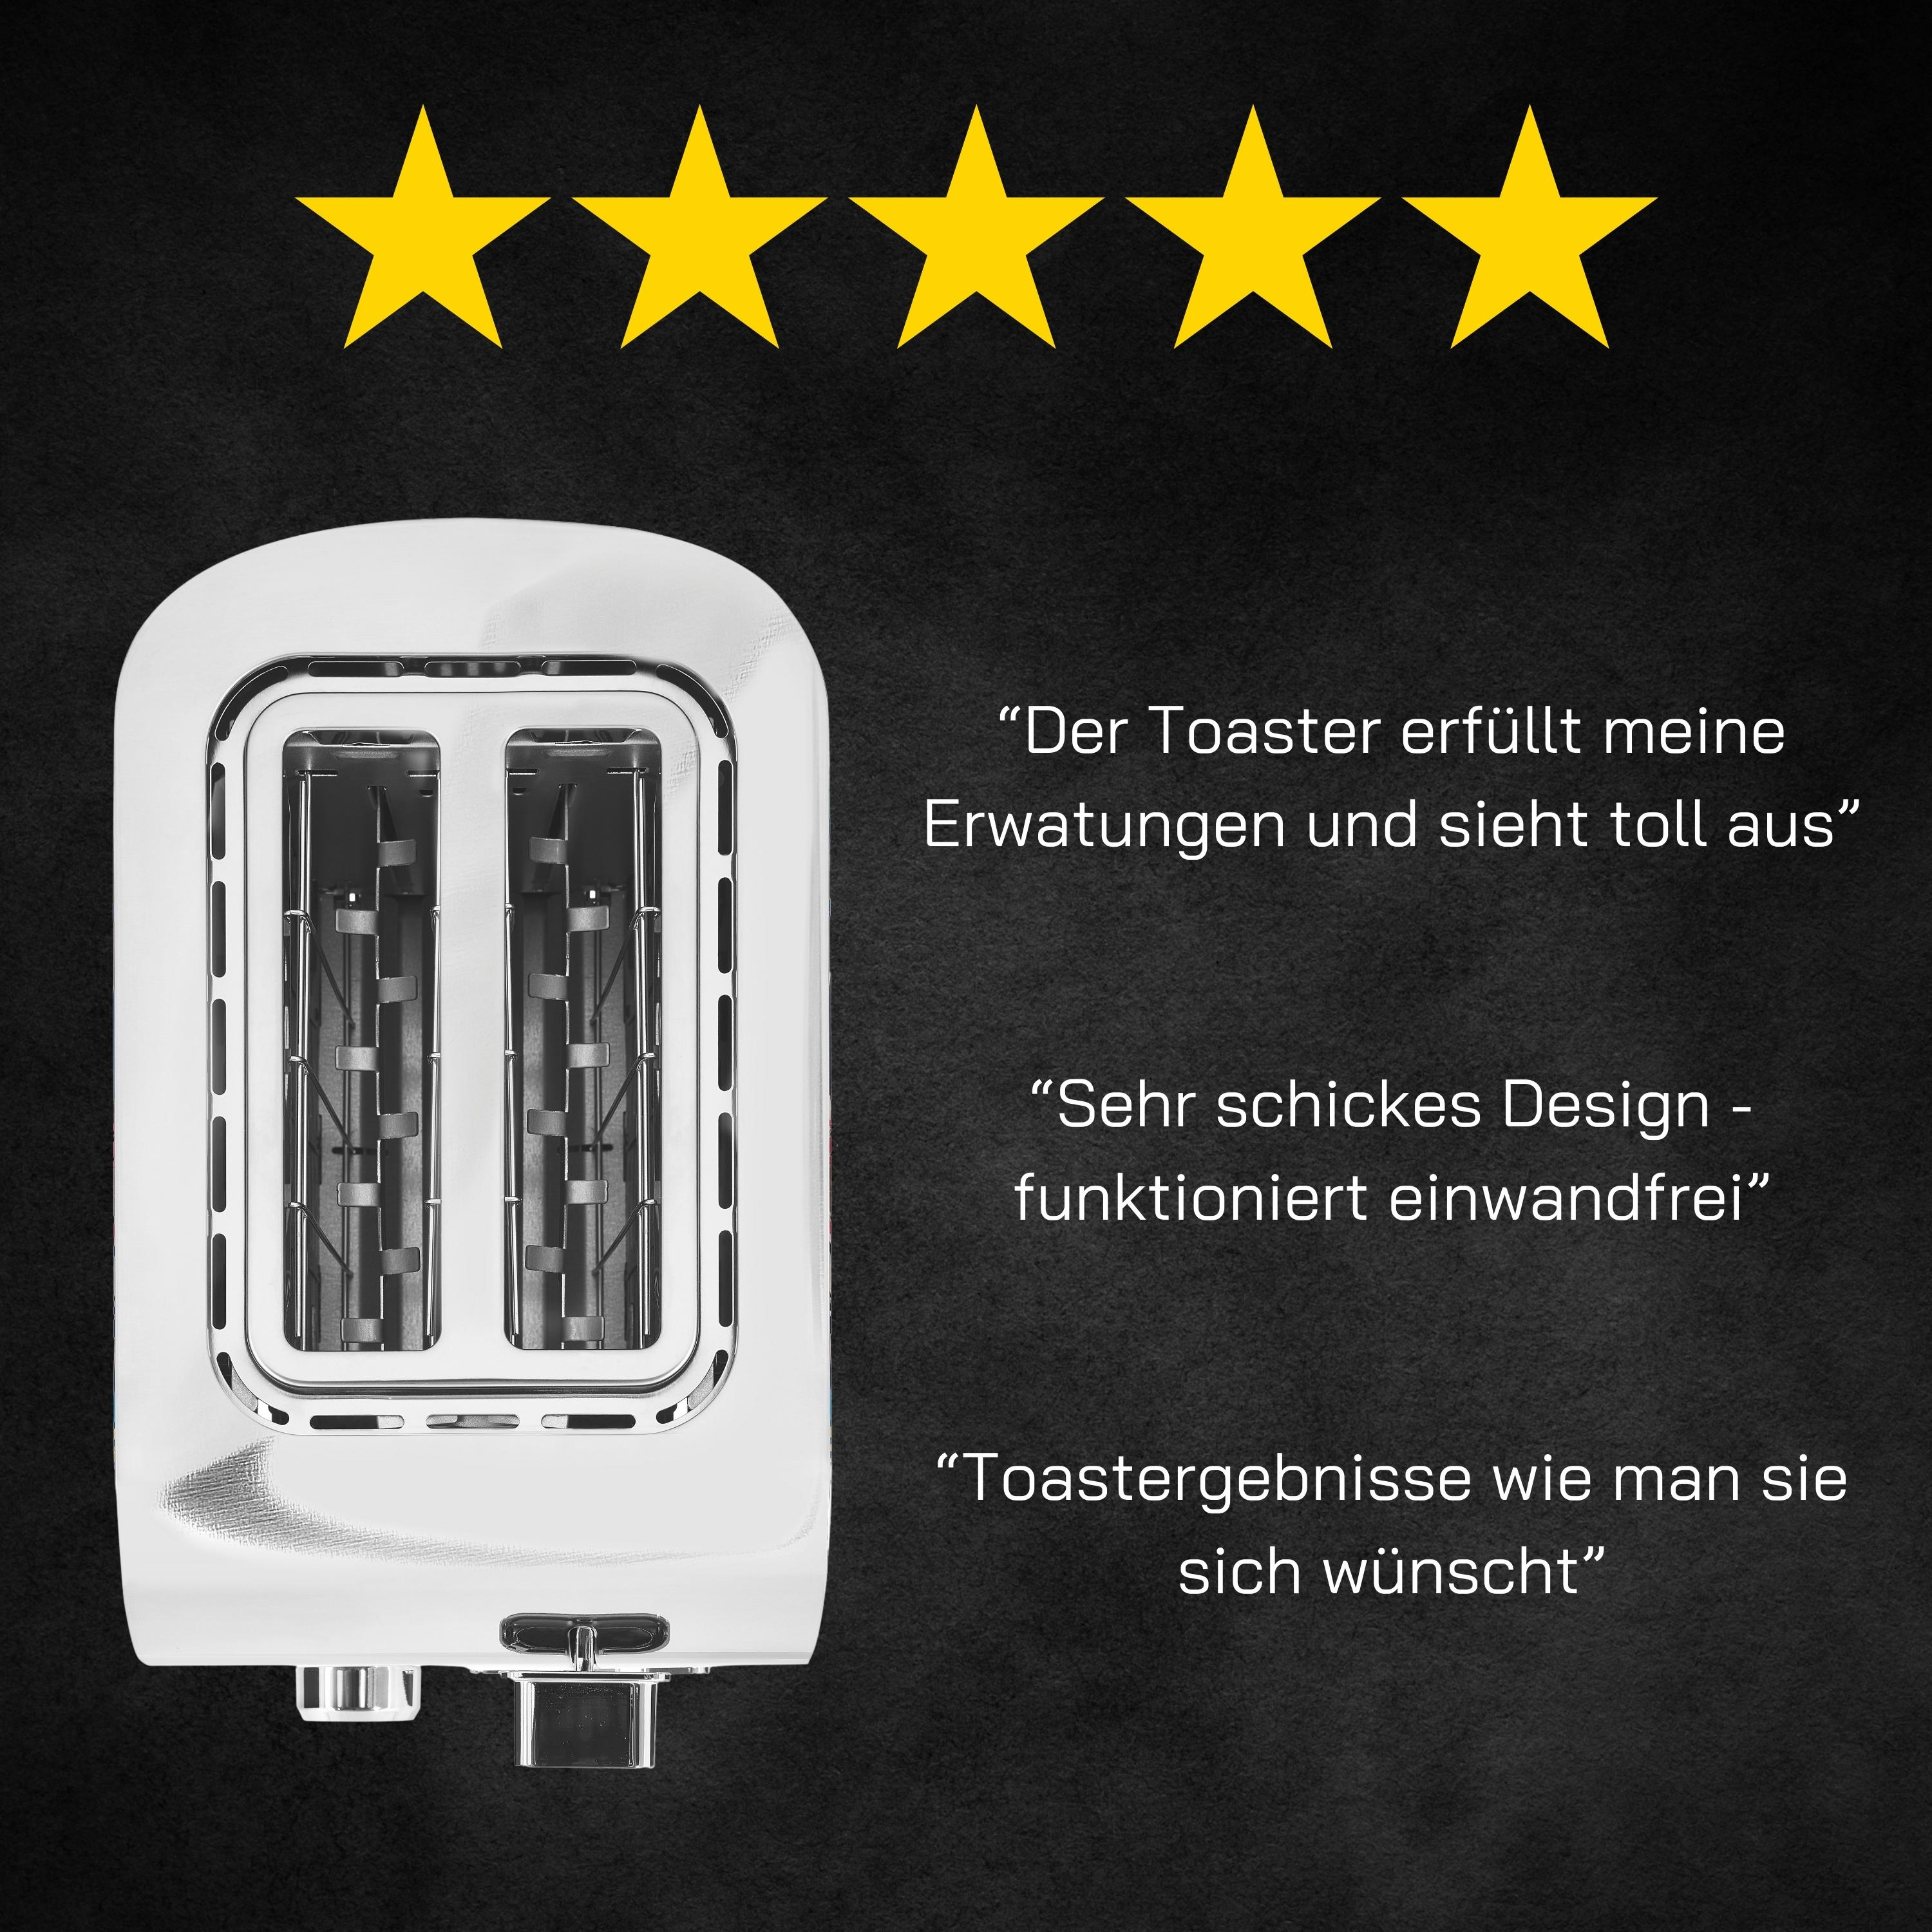 (850 2) Toaster Watt, Schlitze: GUTFELS TOAST 3010 Edelstahl G